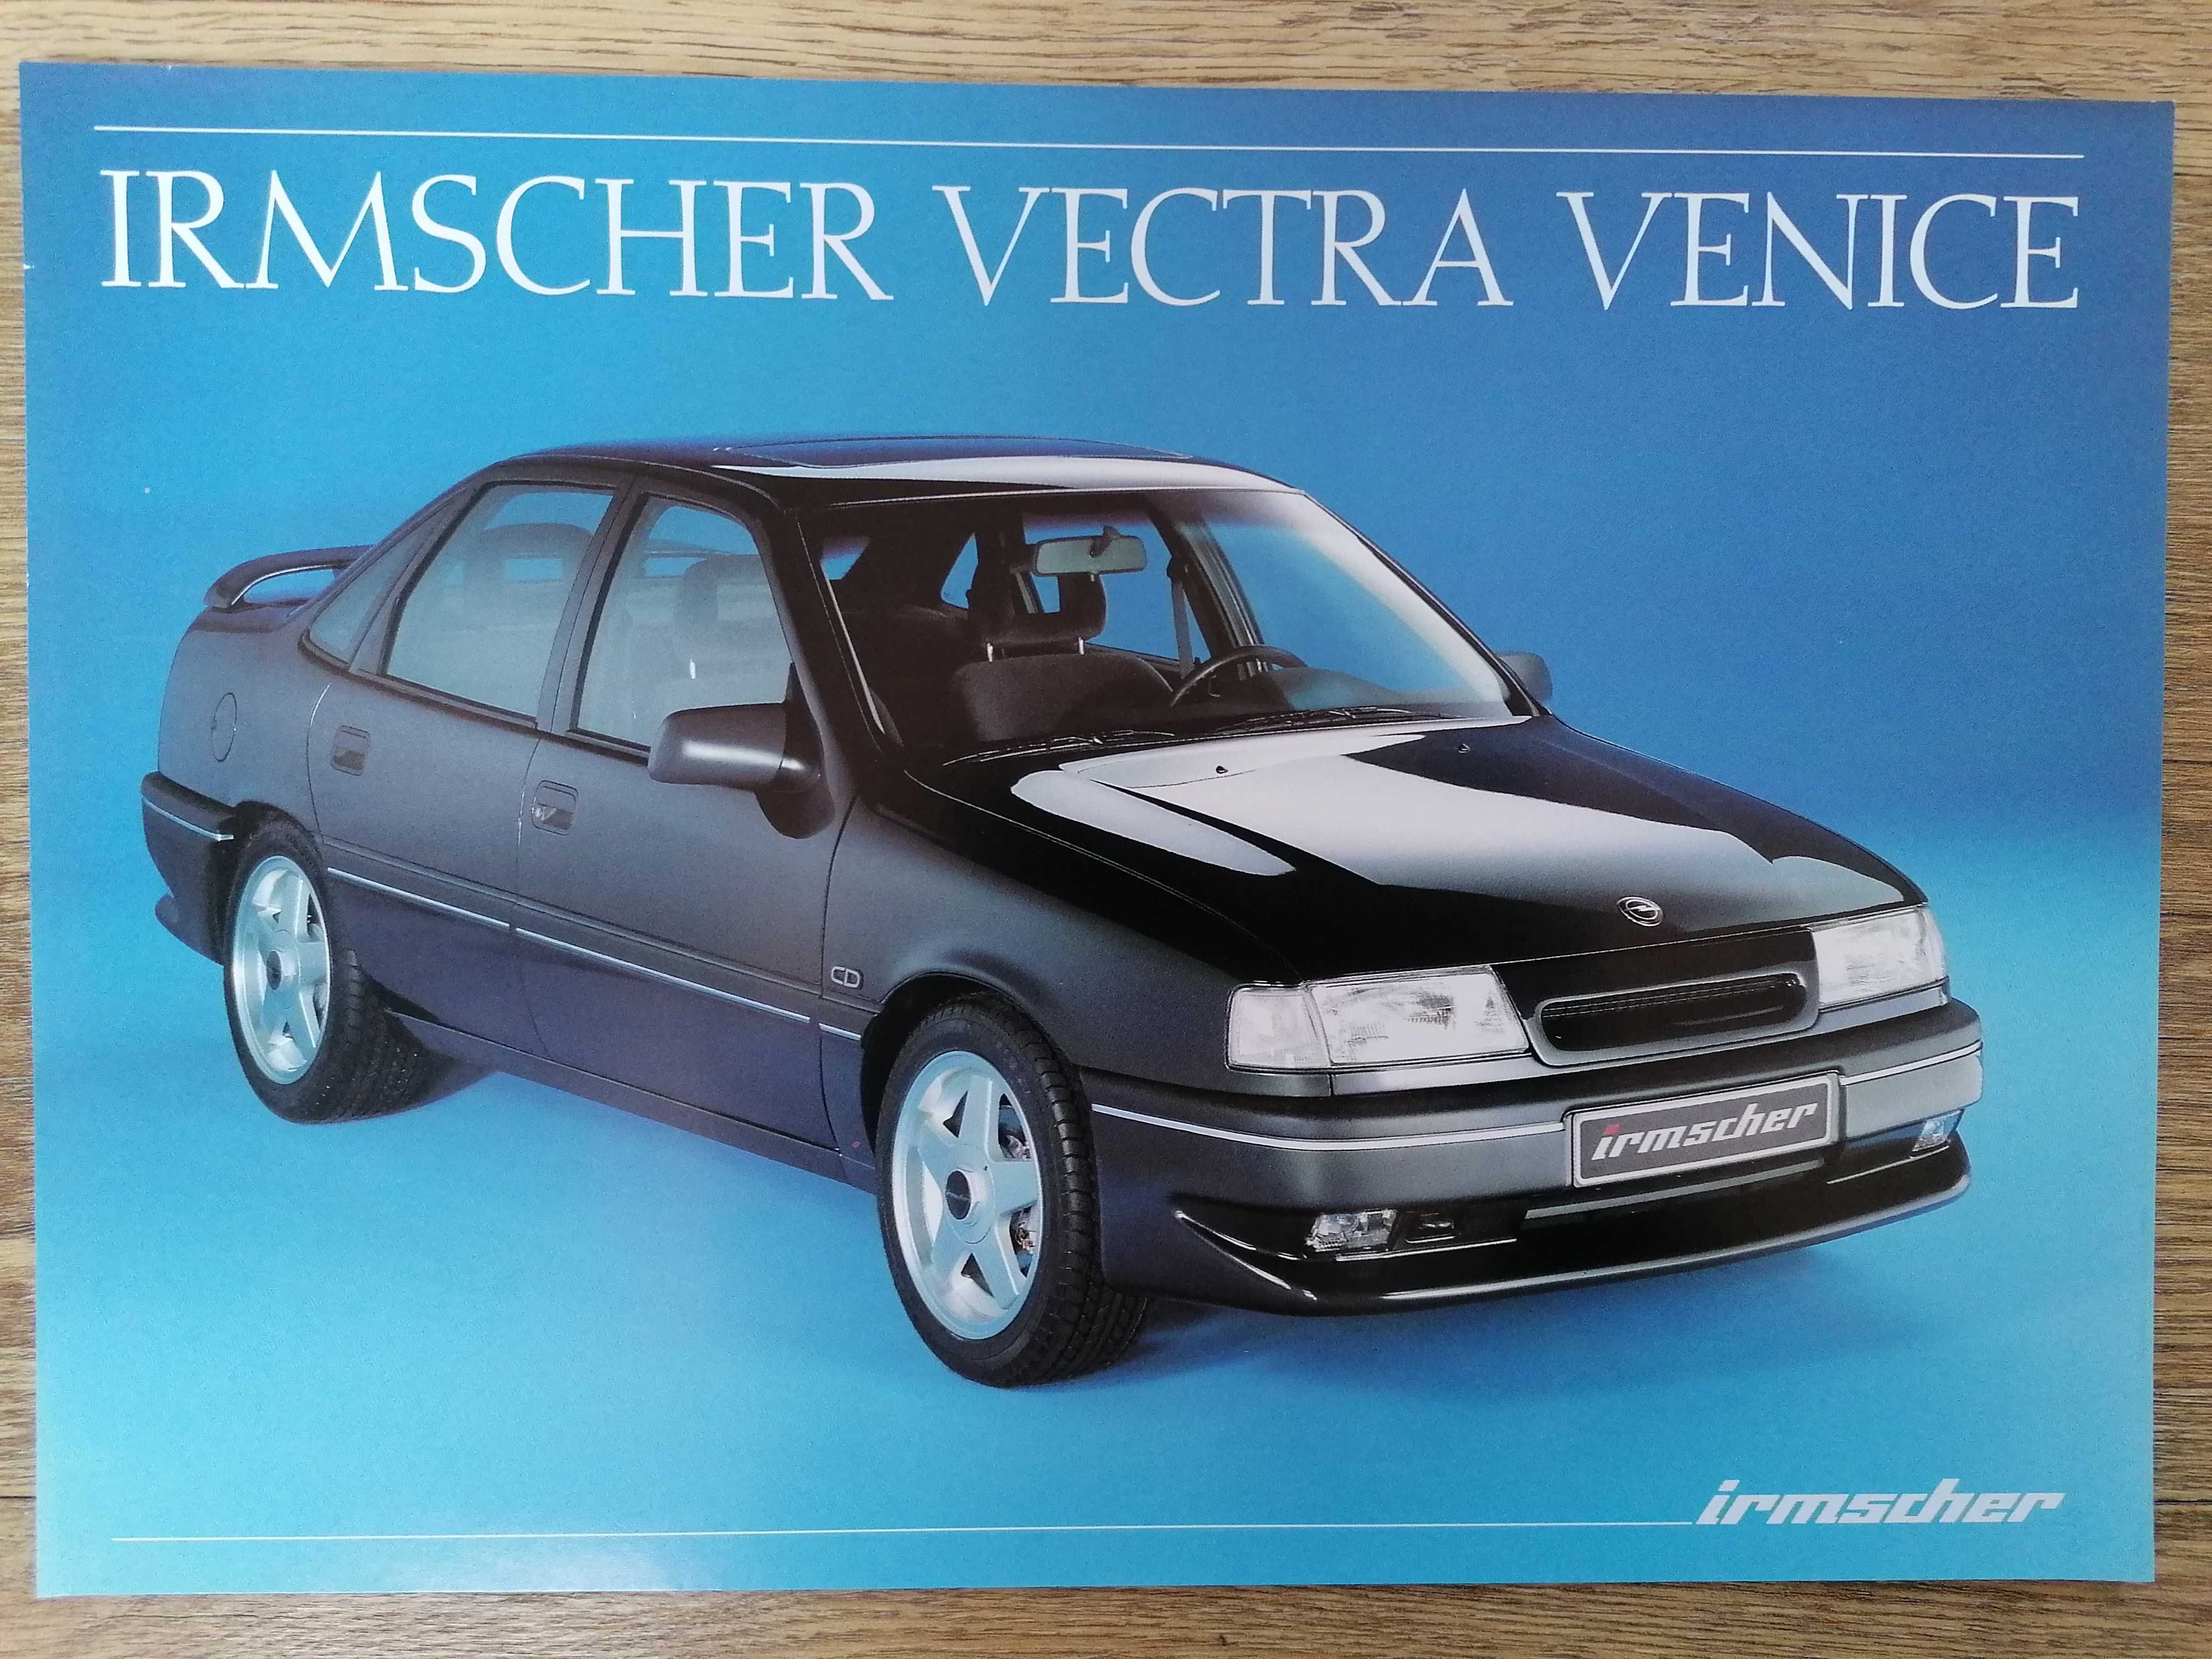 Prospekt Opel Irmscher Vectra Venice.